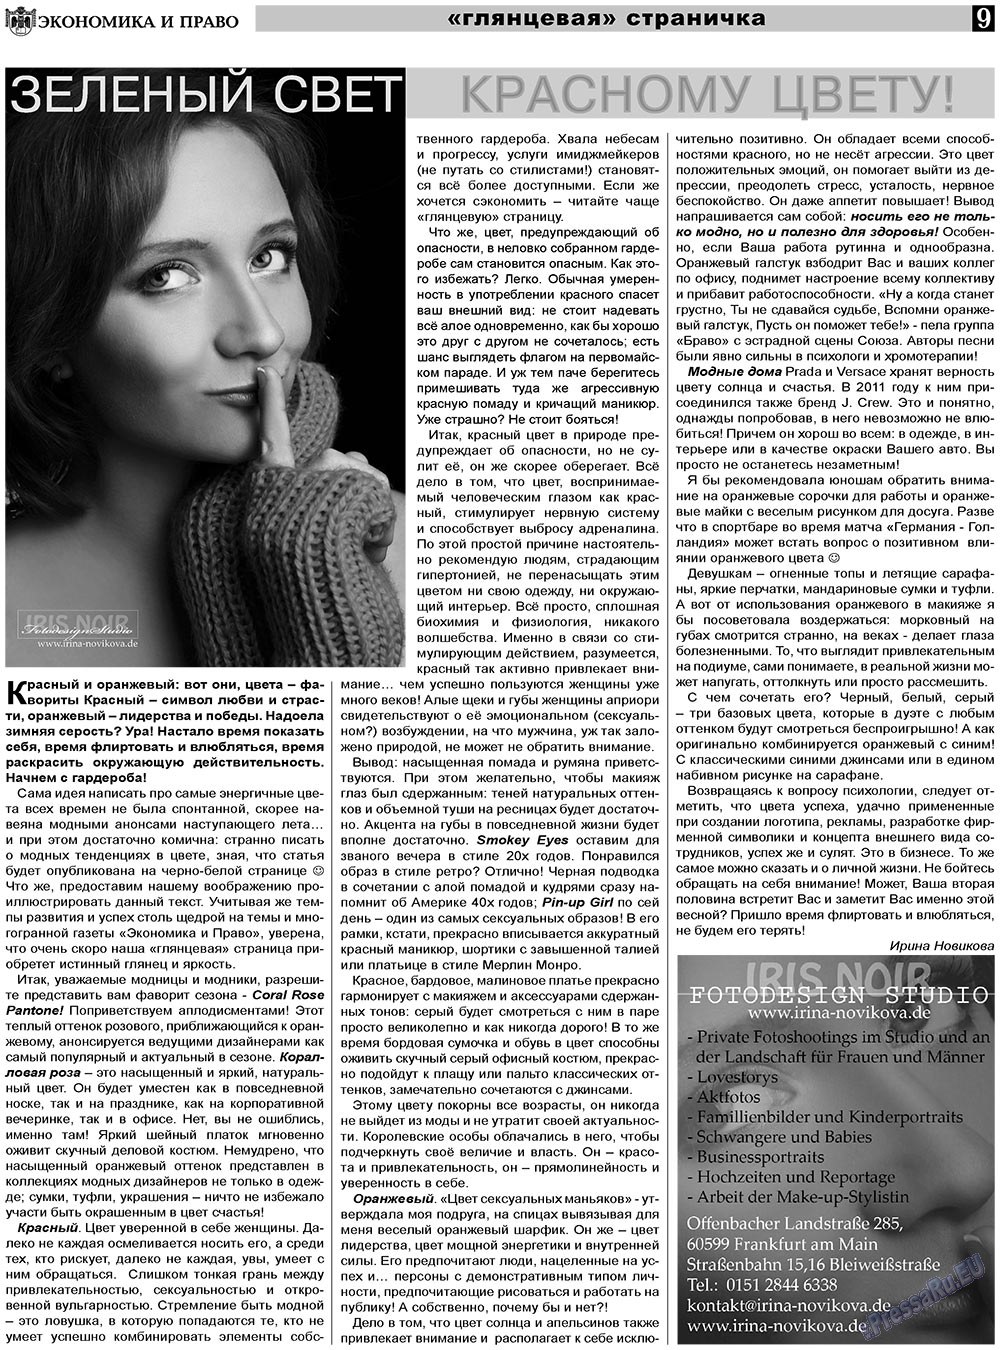 Экономика и право, газета. 2011 №4 стр.9